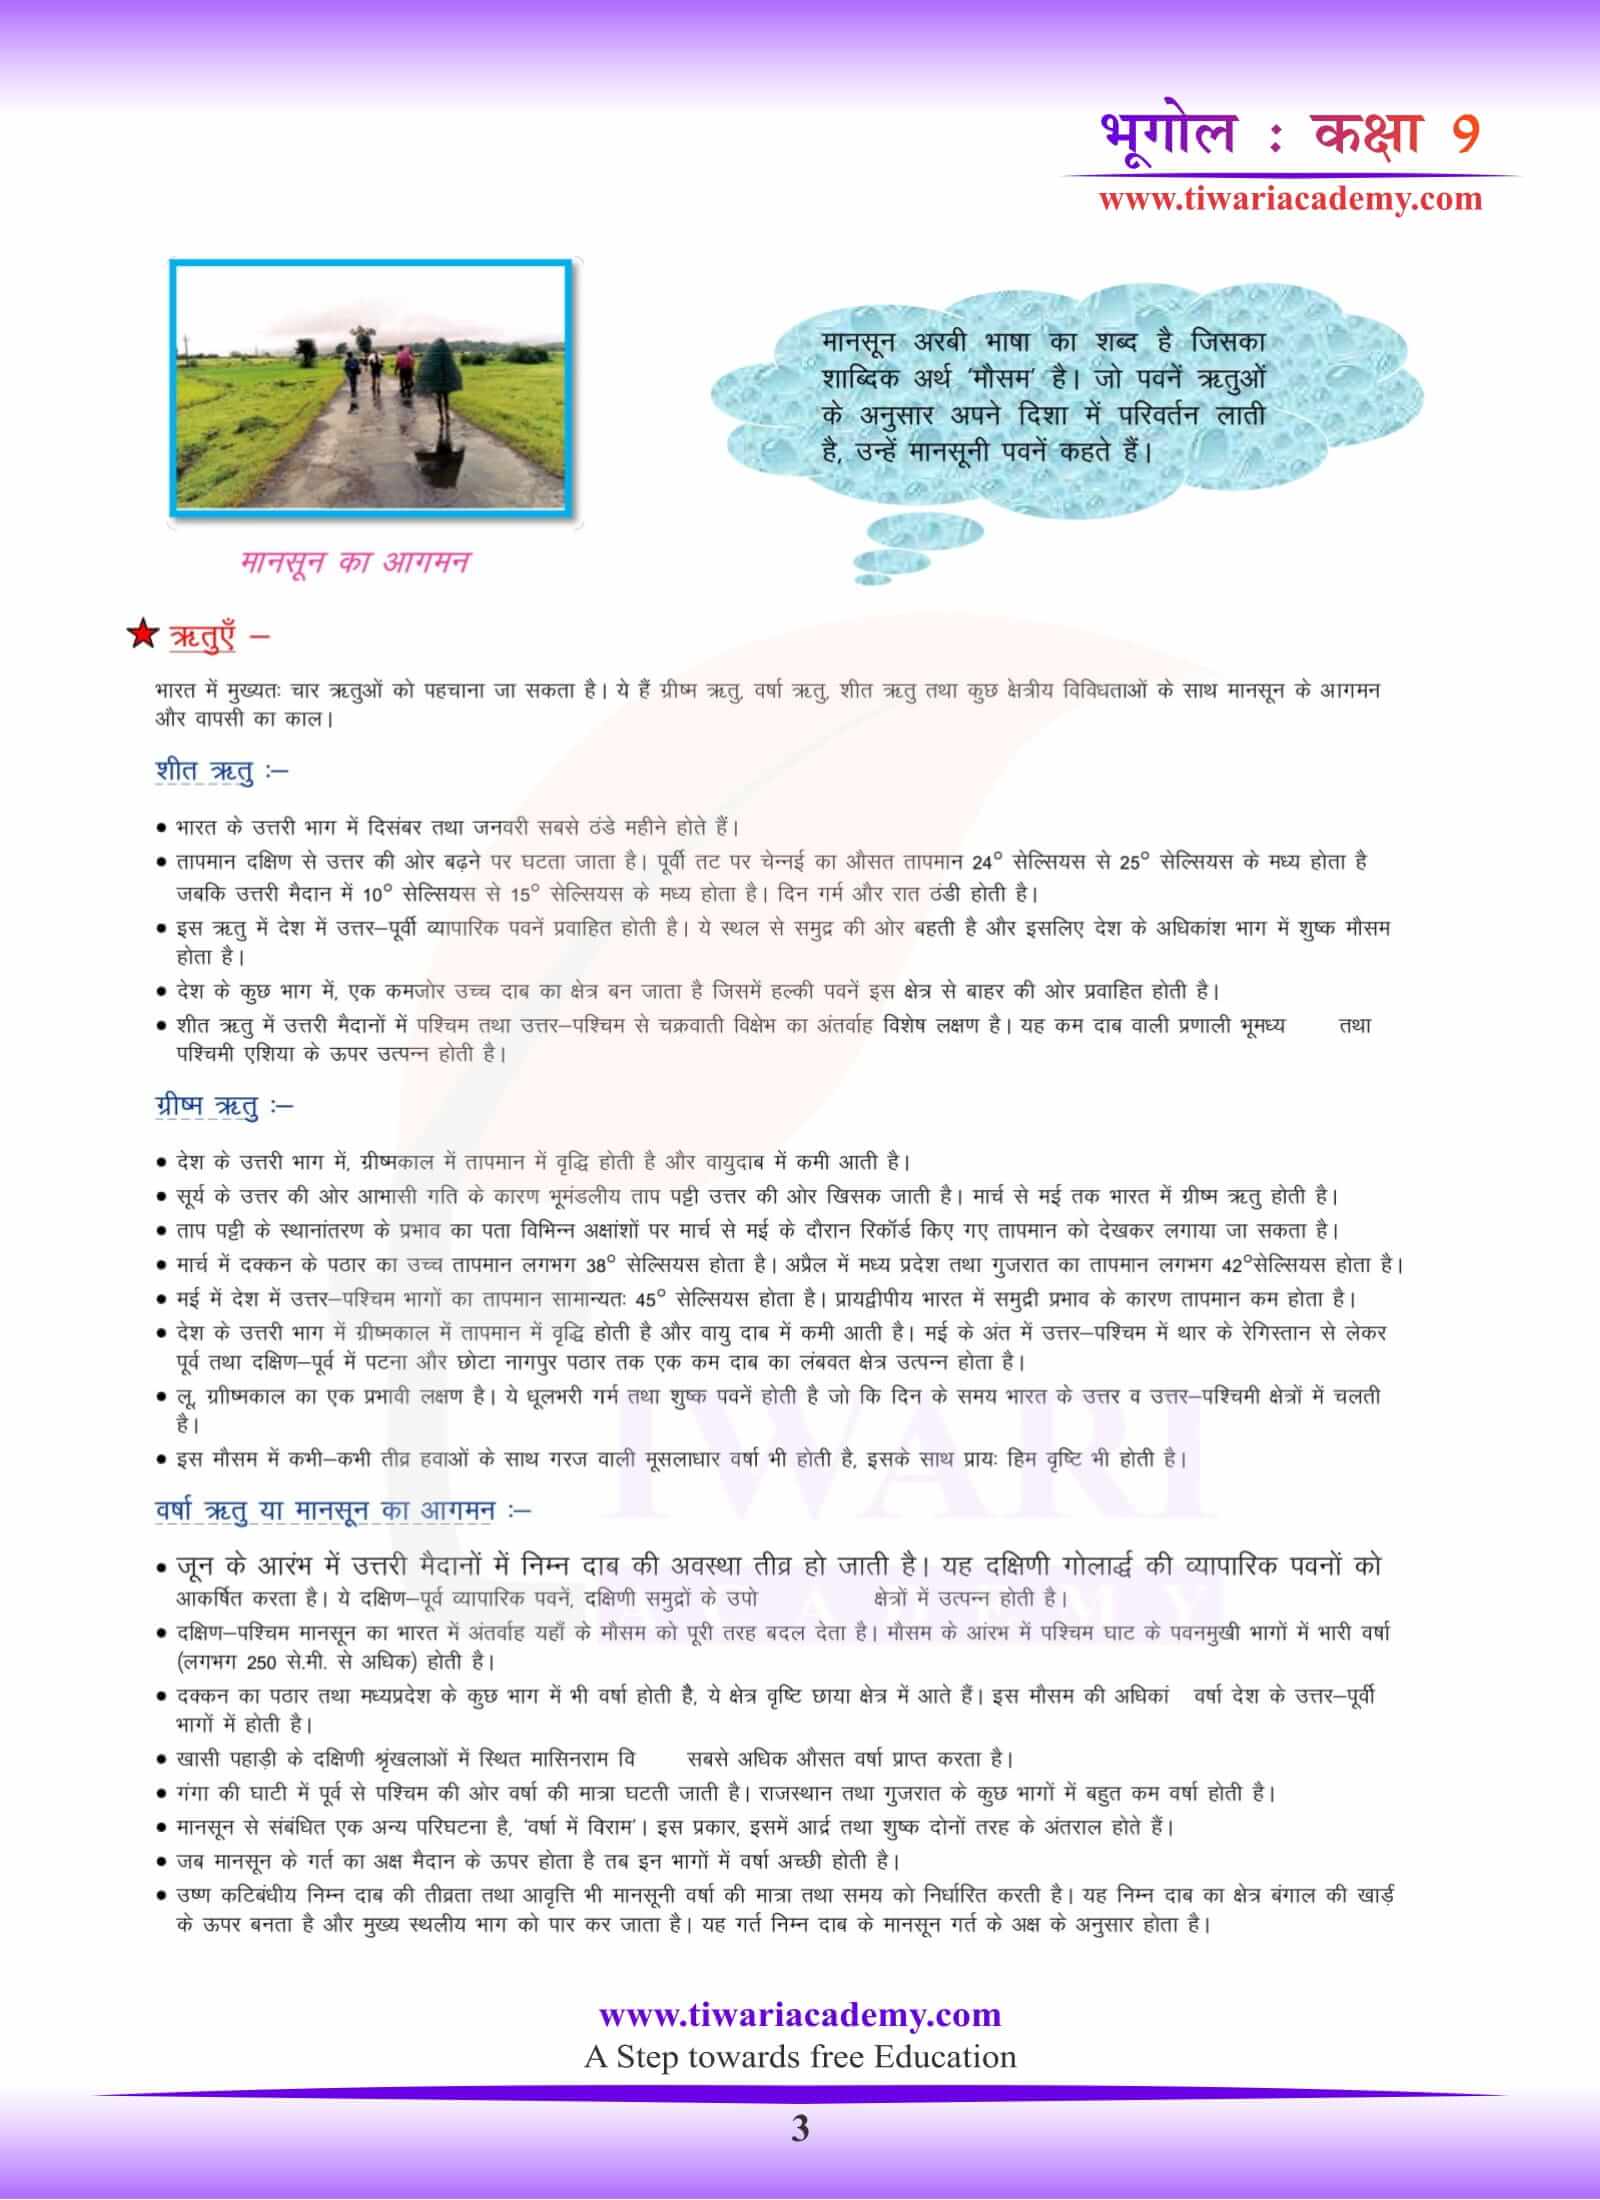 कक्षा 9 भूगोल पाठ 4 प्रश्न उत्तर हिंदी में